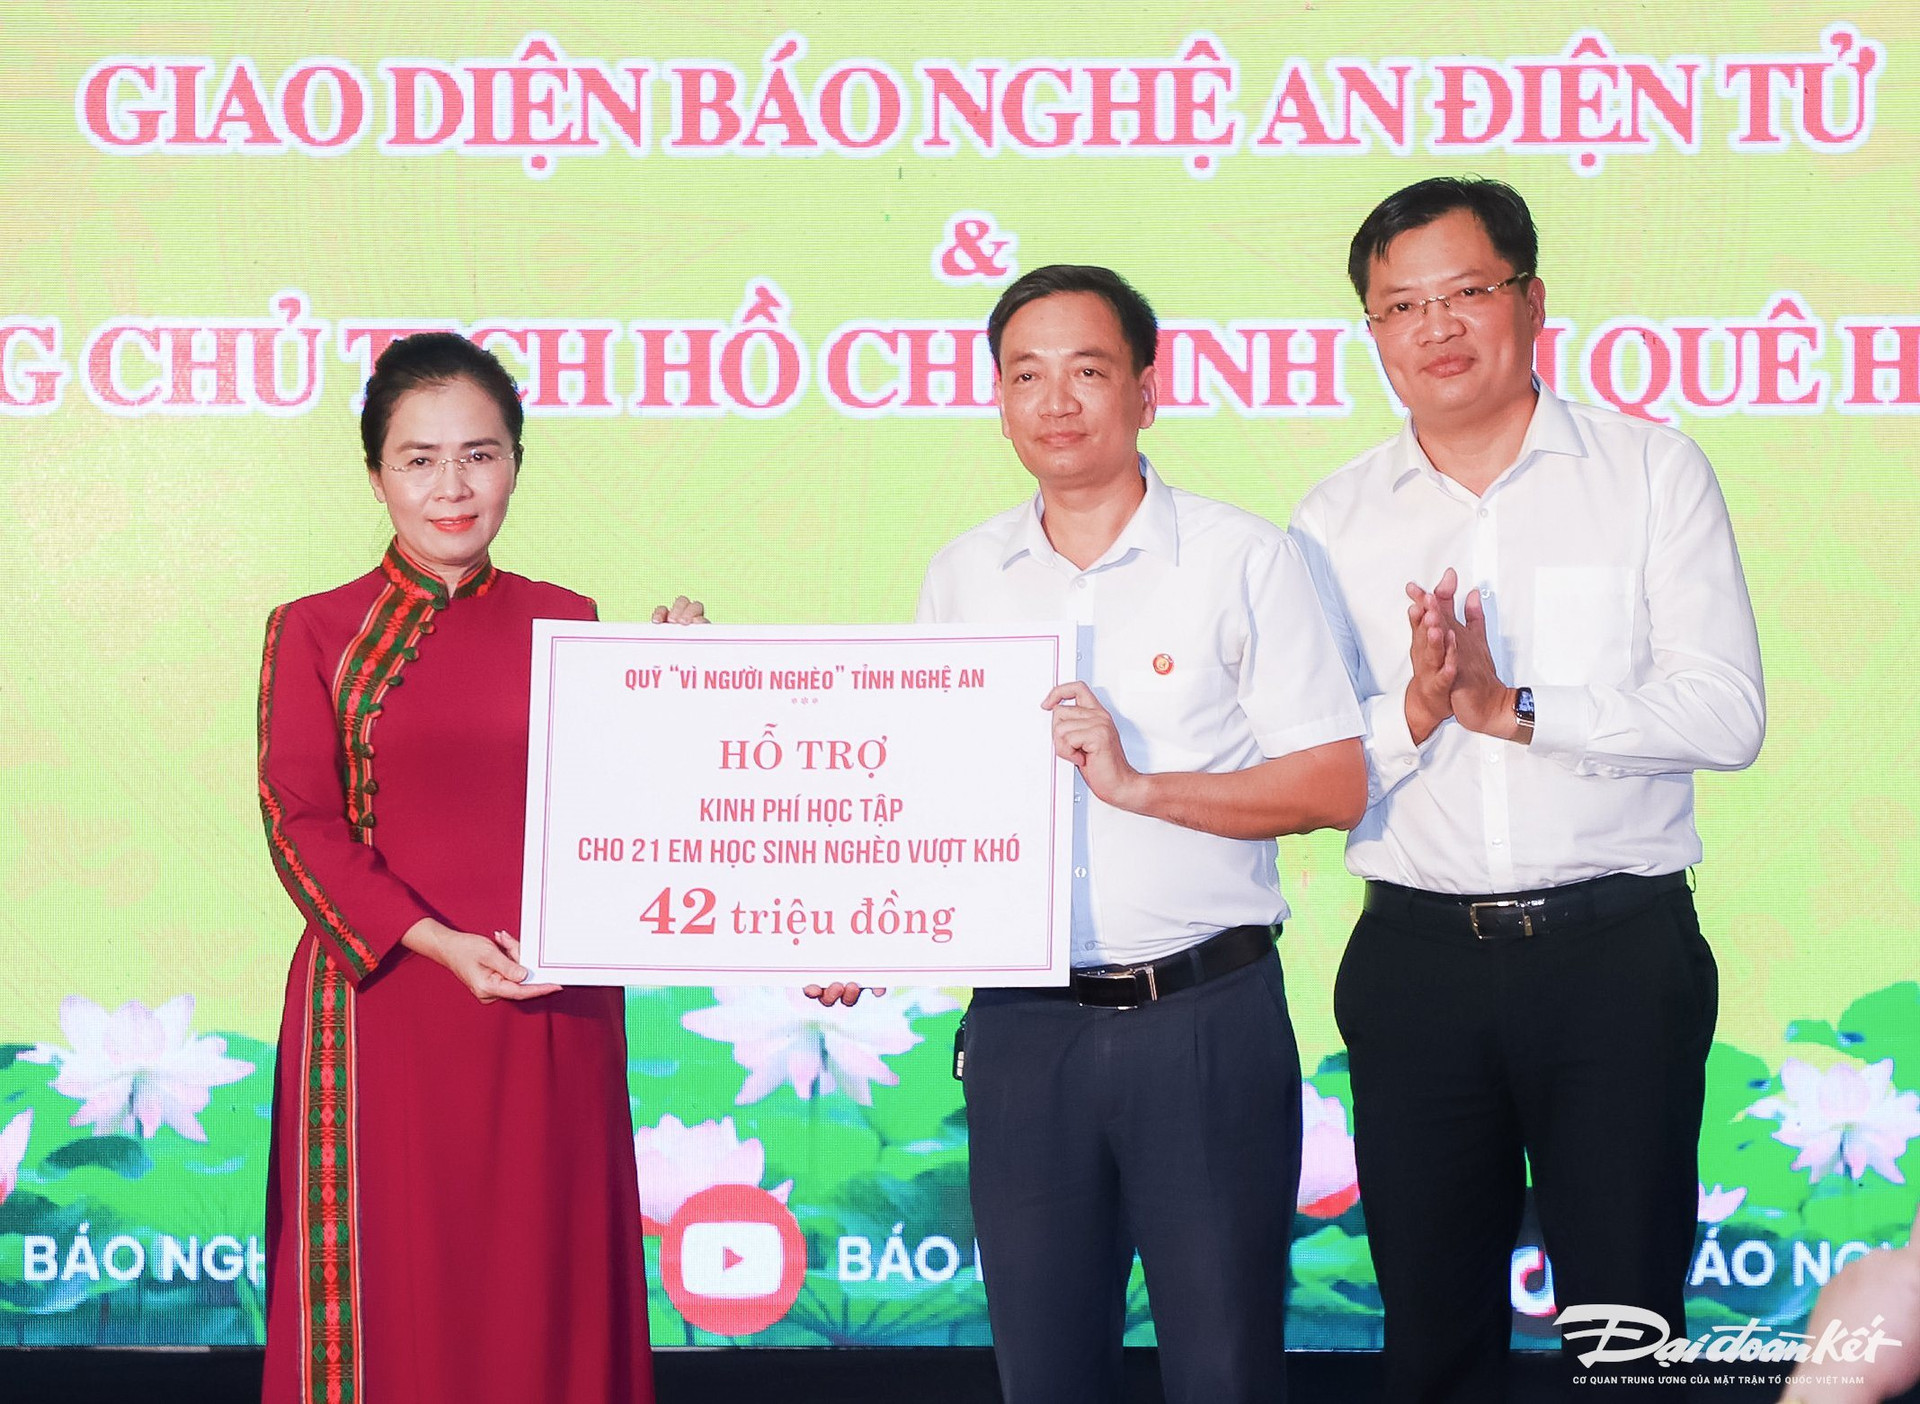 Tại lễ ra mắt, bà Võ Thị Minh Sinh, Chủ tịch Uỷ ban MTTQ tỉnh Nghệ An trao hỗ trợ 42 triệu đồng cho 21 em học sinh nghèo vượt khó từ Quỹ 